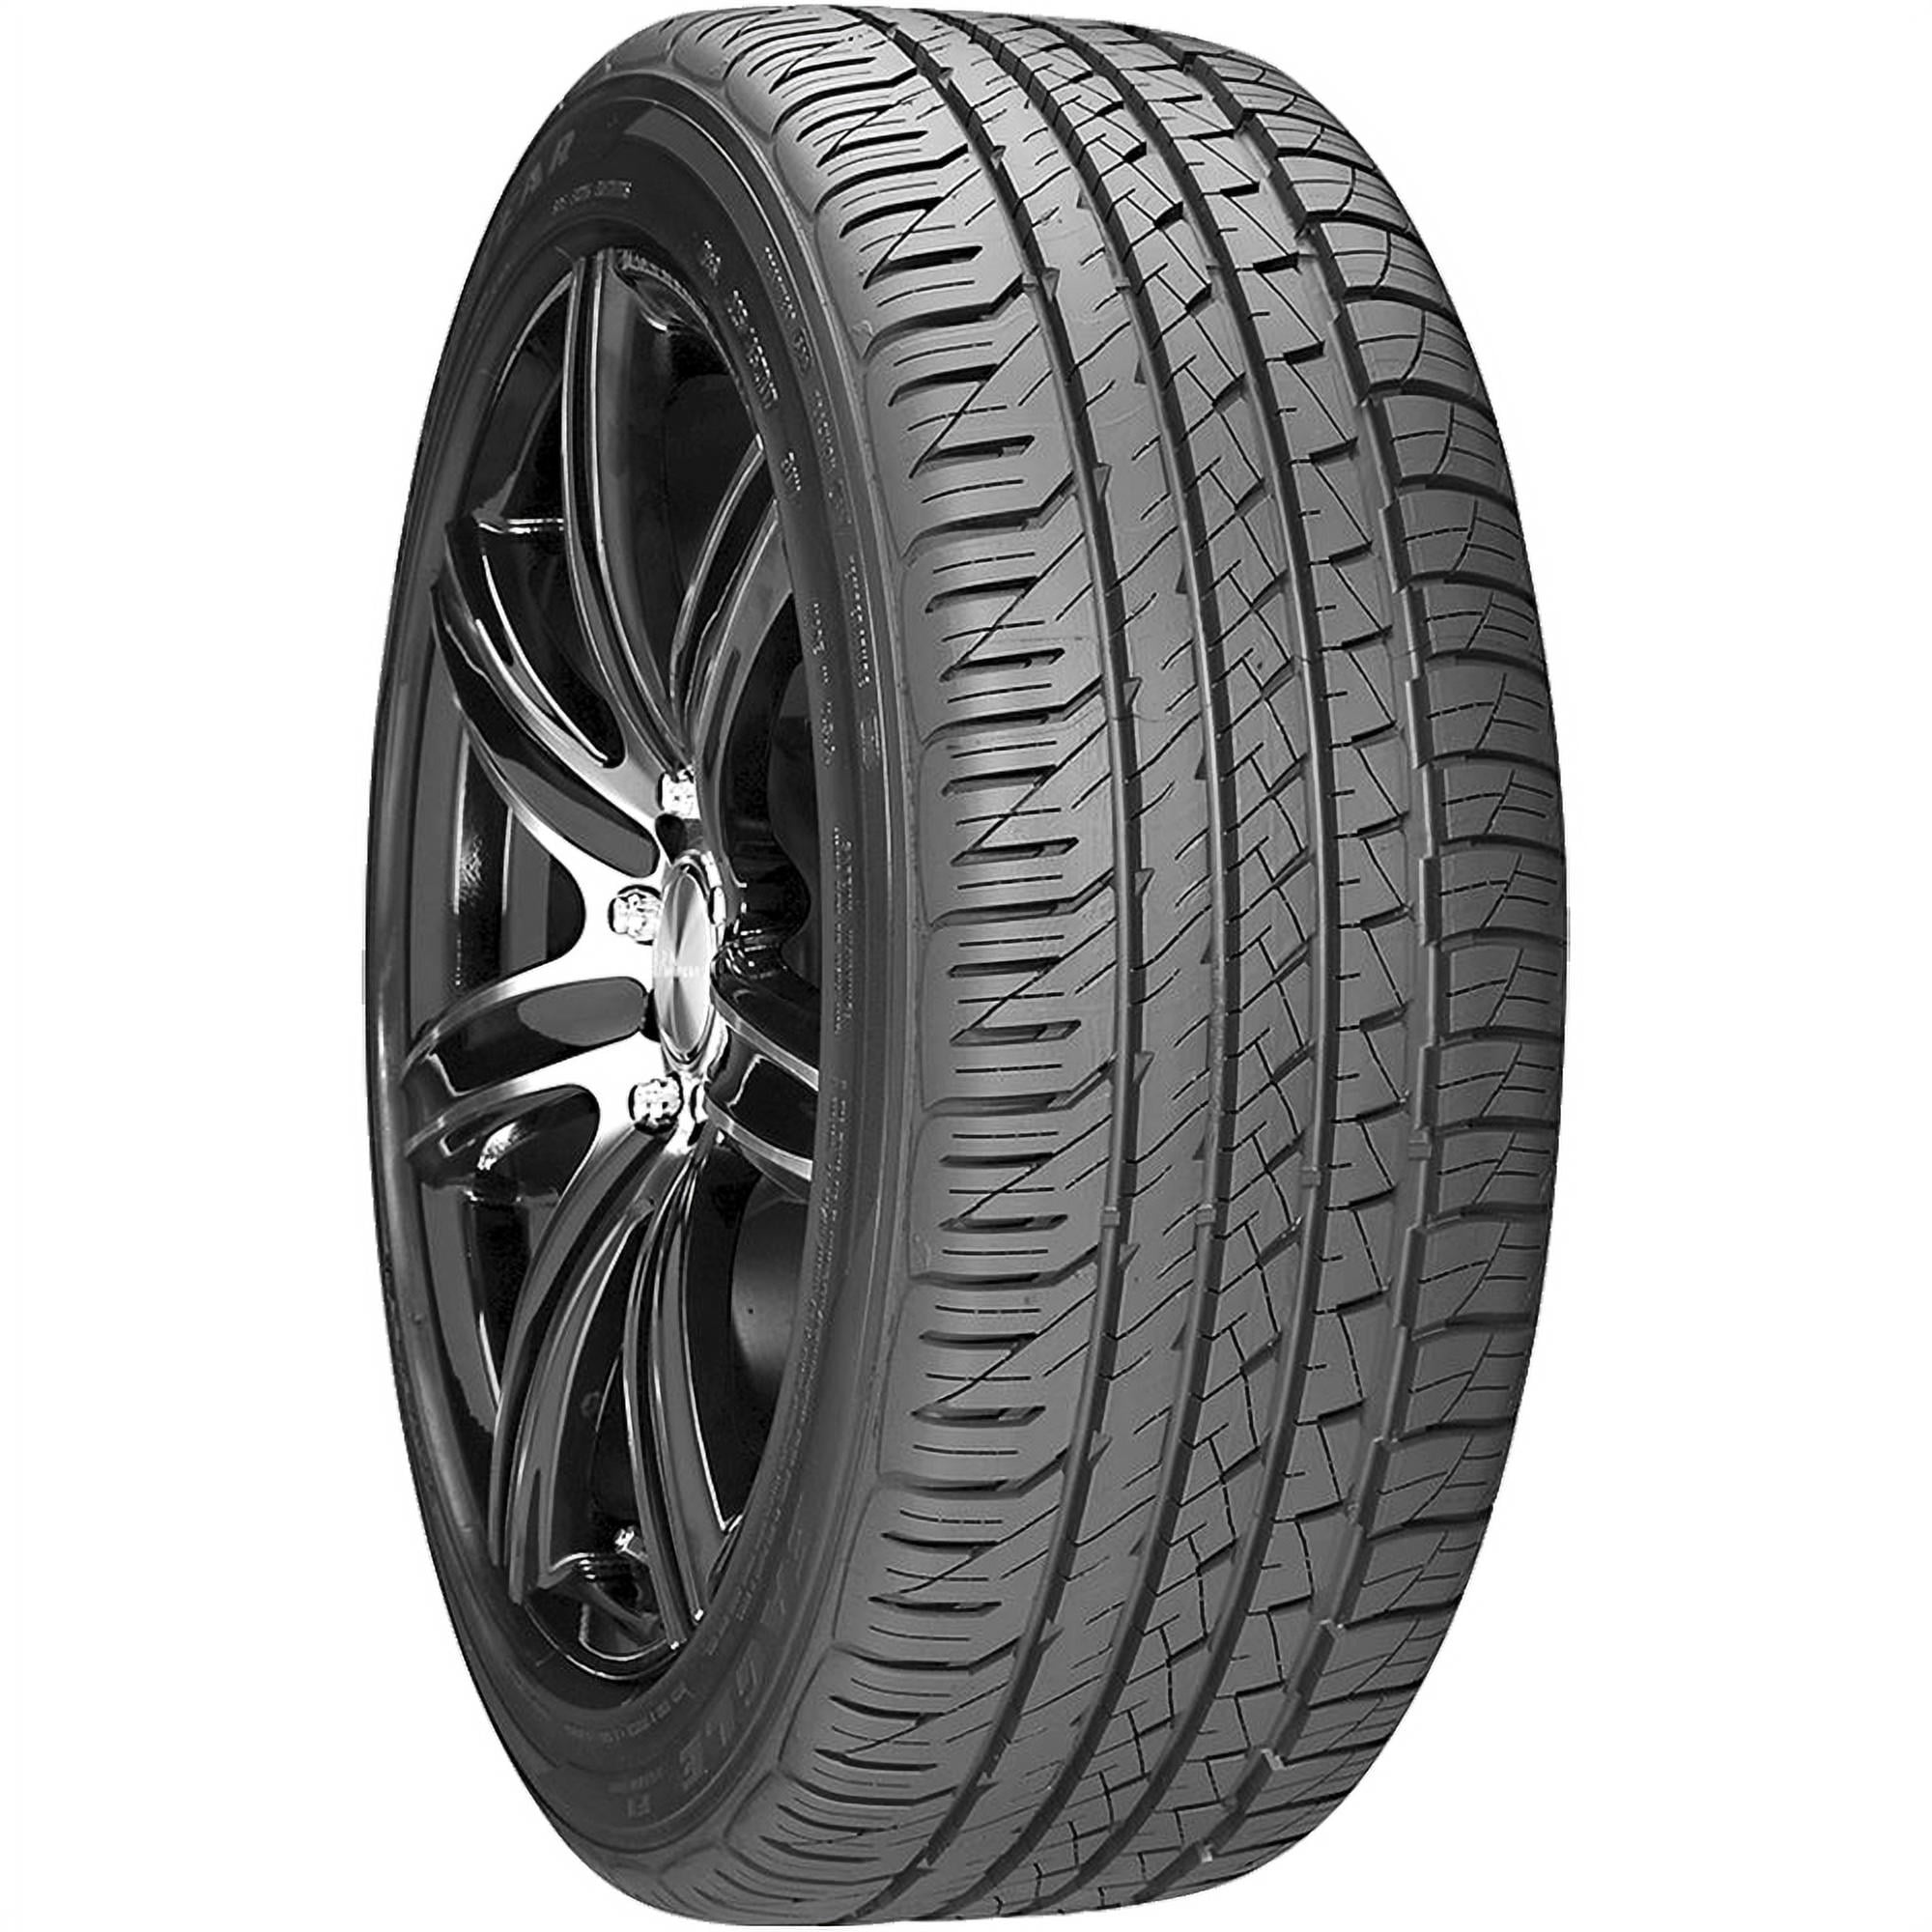 Asymmetric Eagle 99 255/45R18 W Tire All-Season F1 Goodyear